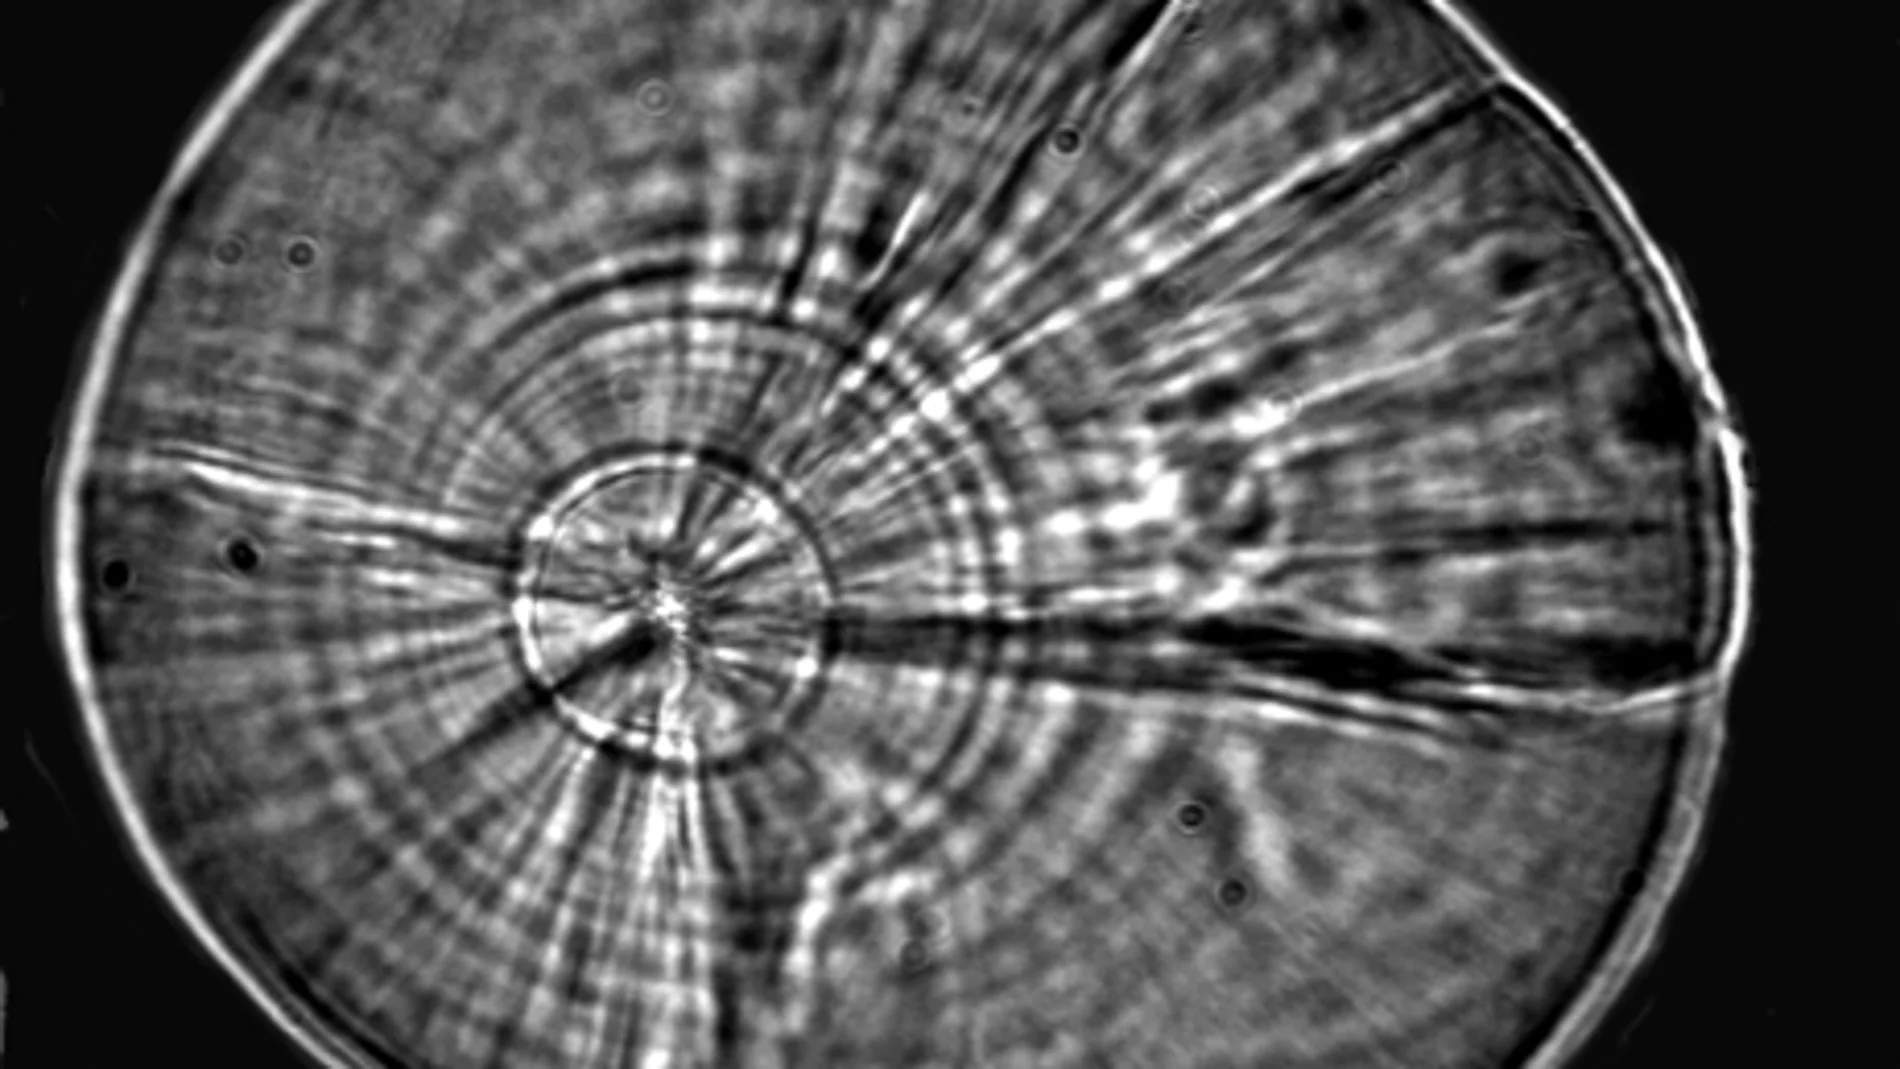 Imagen al microscopio de las microestructuras de deposición del otolito